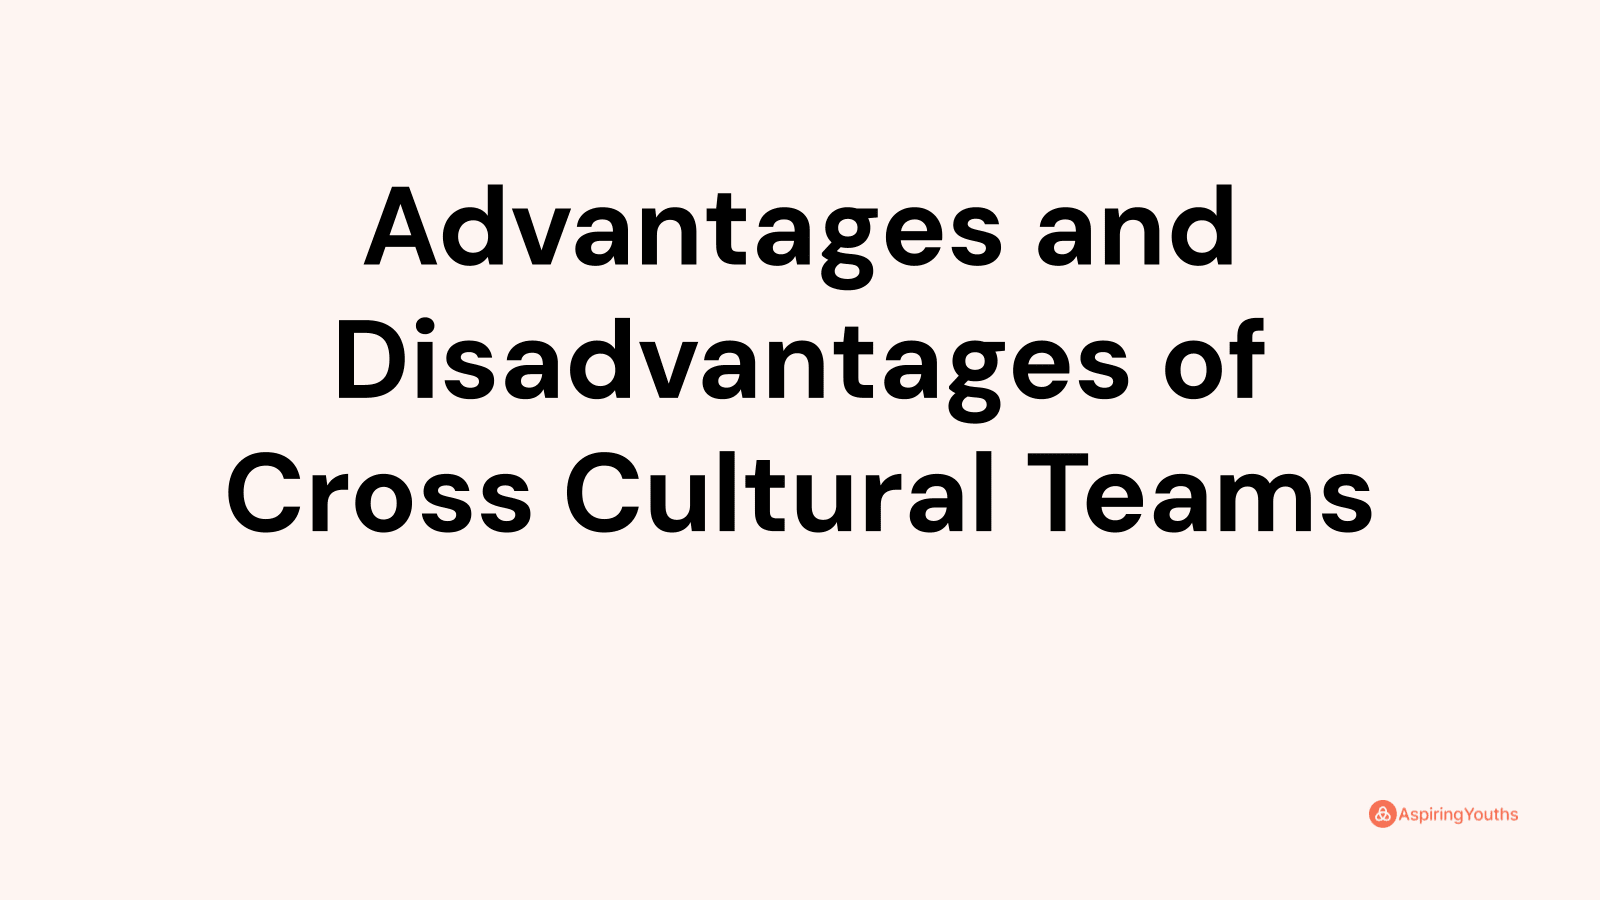 Advantages and disadvantages of Cross Cultural Teams